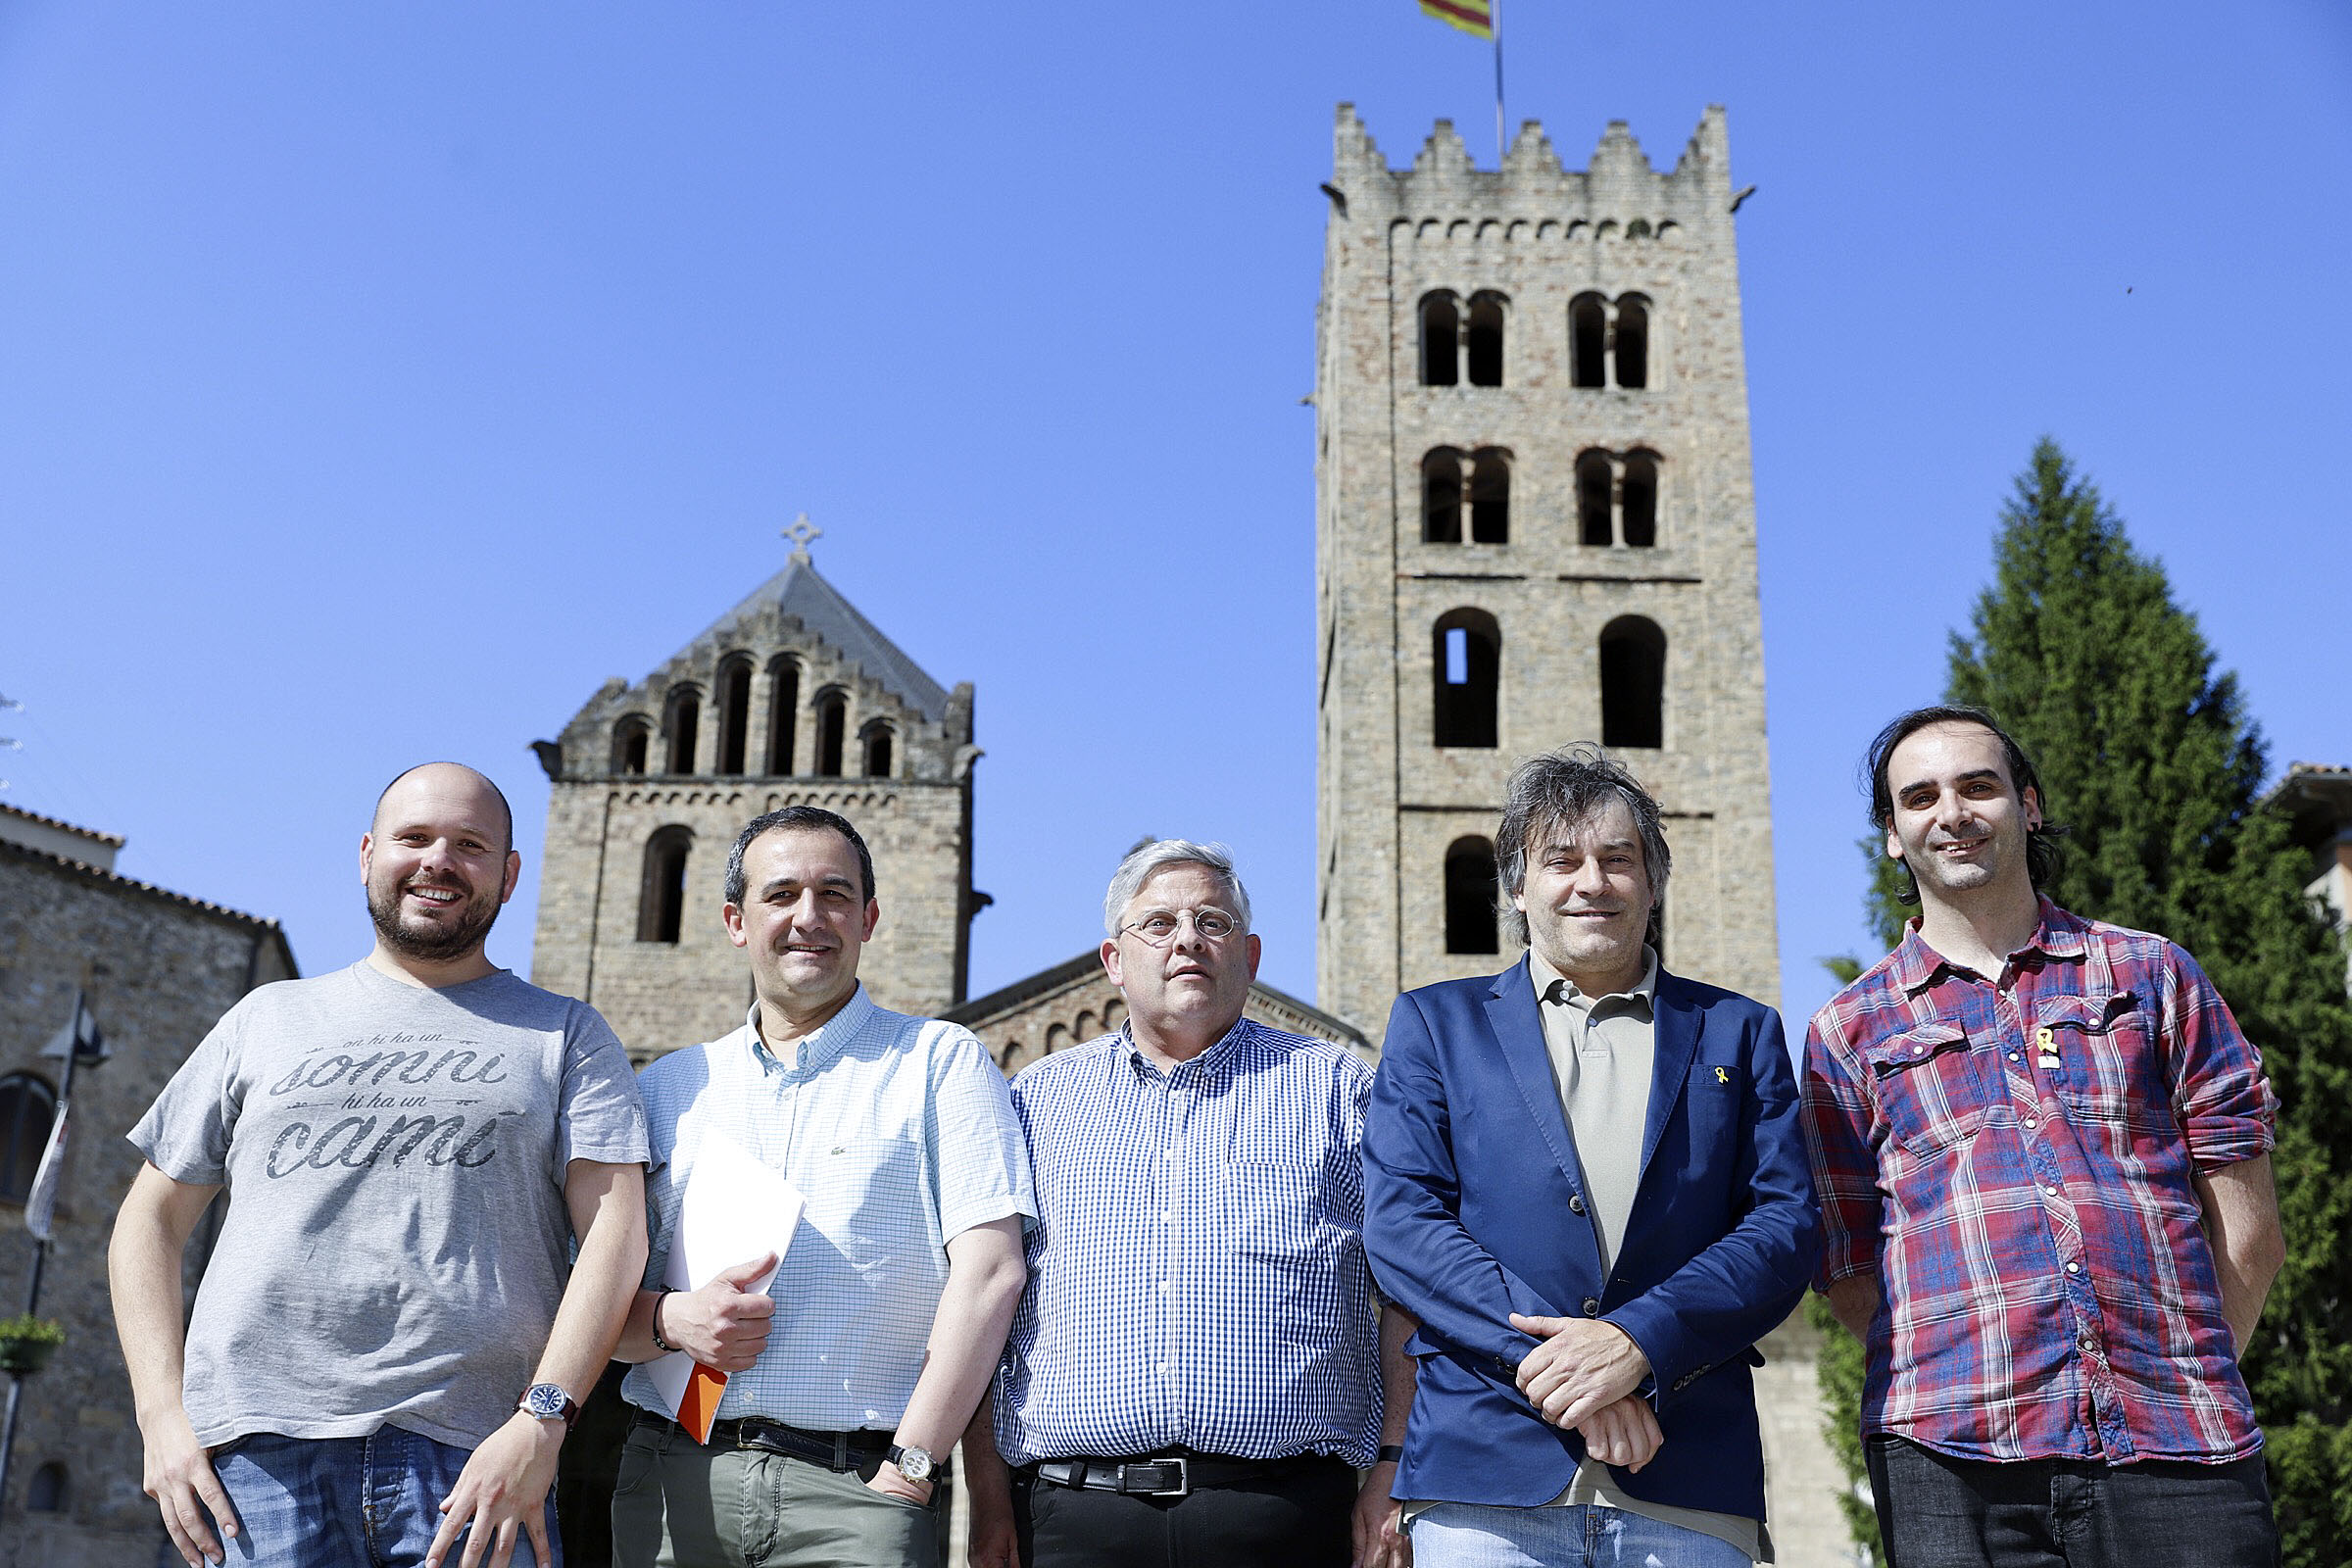 Quim Merino (L’Esportiu Ripoll), Jordi Vilarrodà (Òmnium) i Andreu Coll (Tradicat), amb Jordi Munell i Txevi Rovira, del Consell Comarcal d’Osona